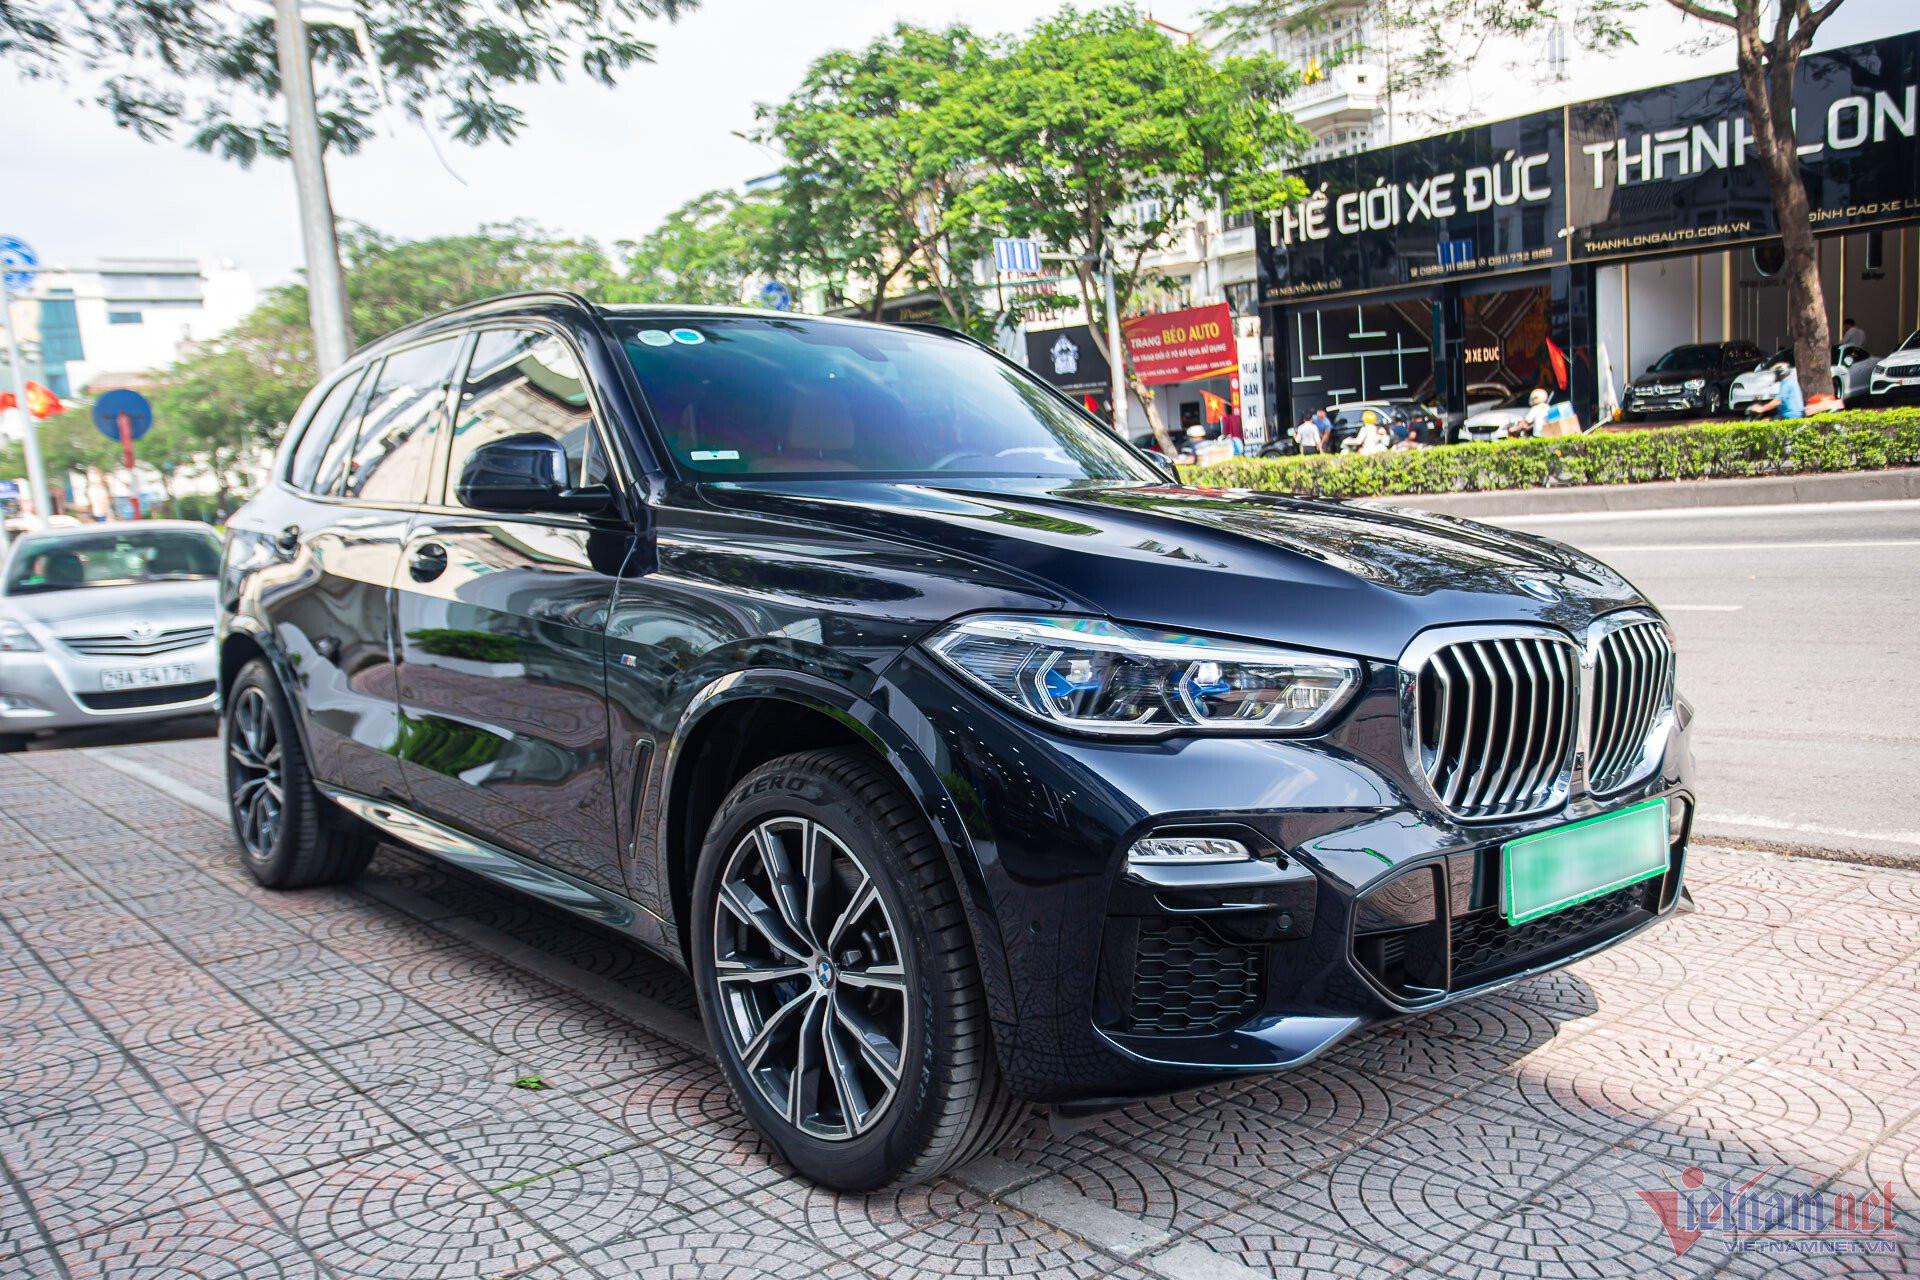 BMW X5 đời 2020 mới lăn bánh 100 km, chủ xe bán lỗ hơn 1 tỷ đồng - 1